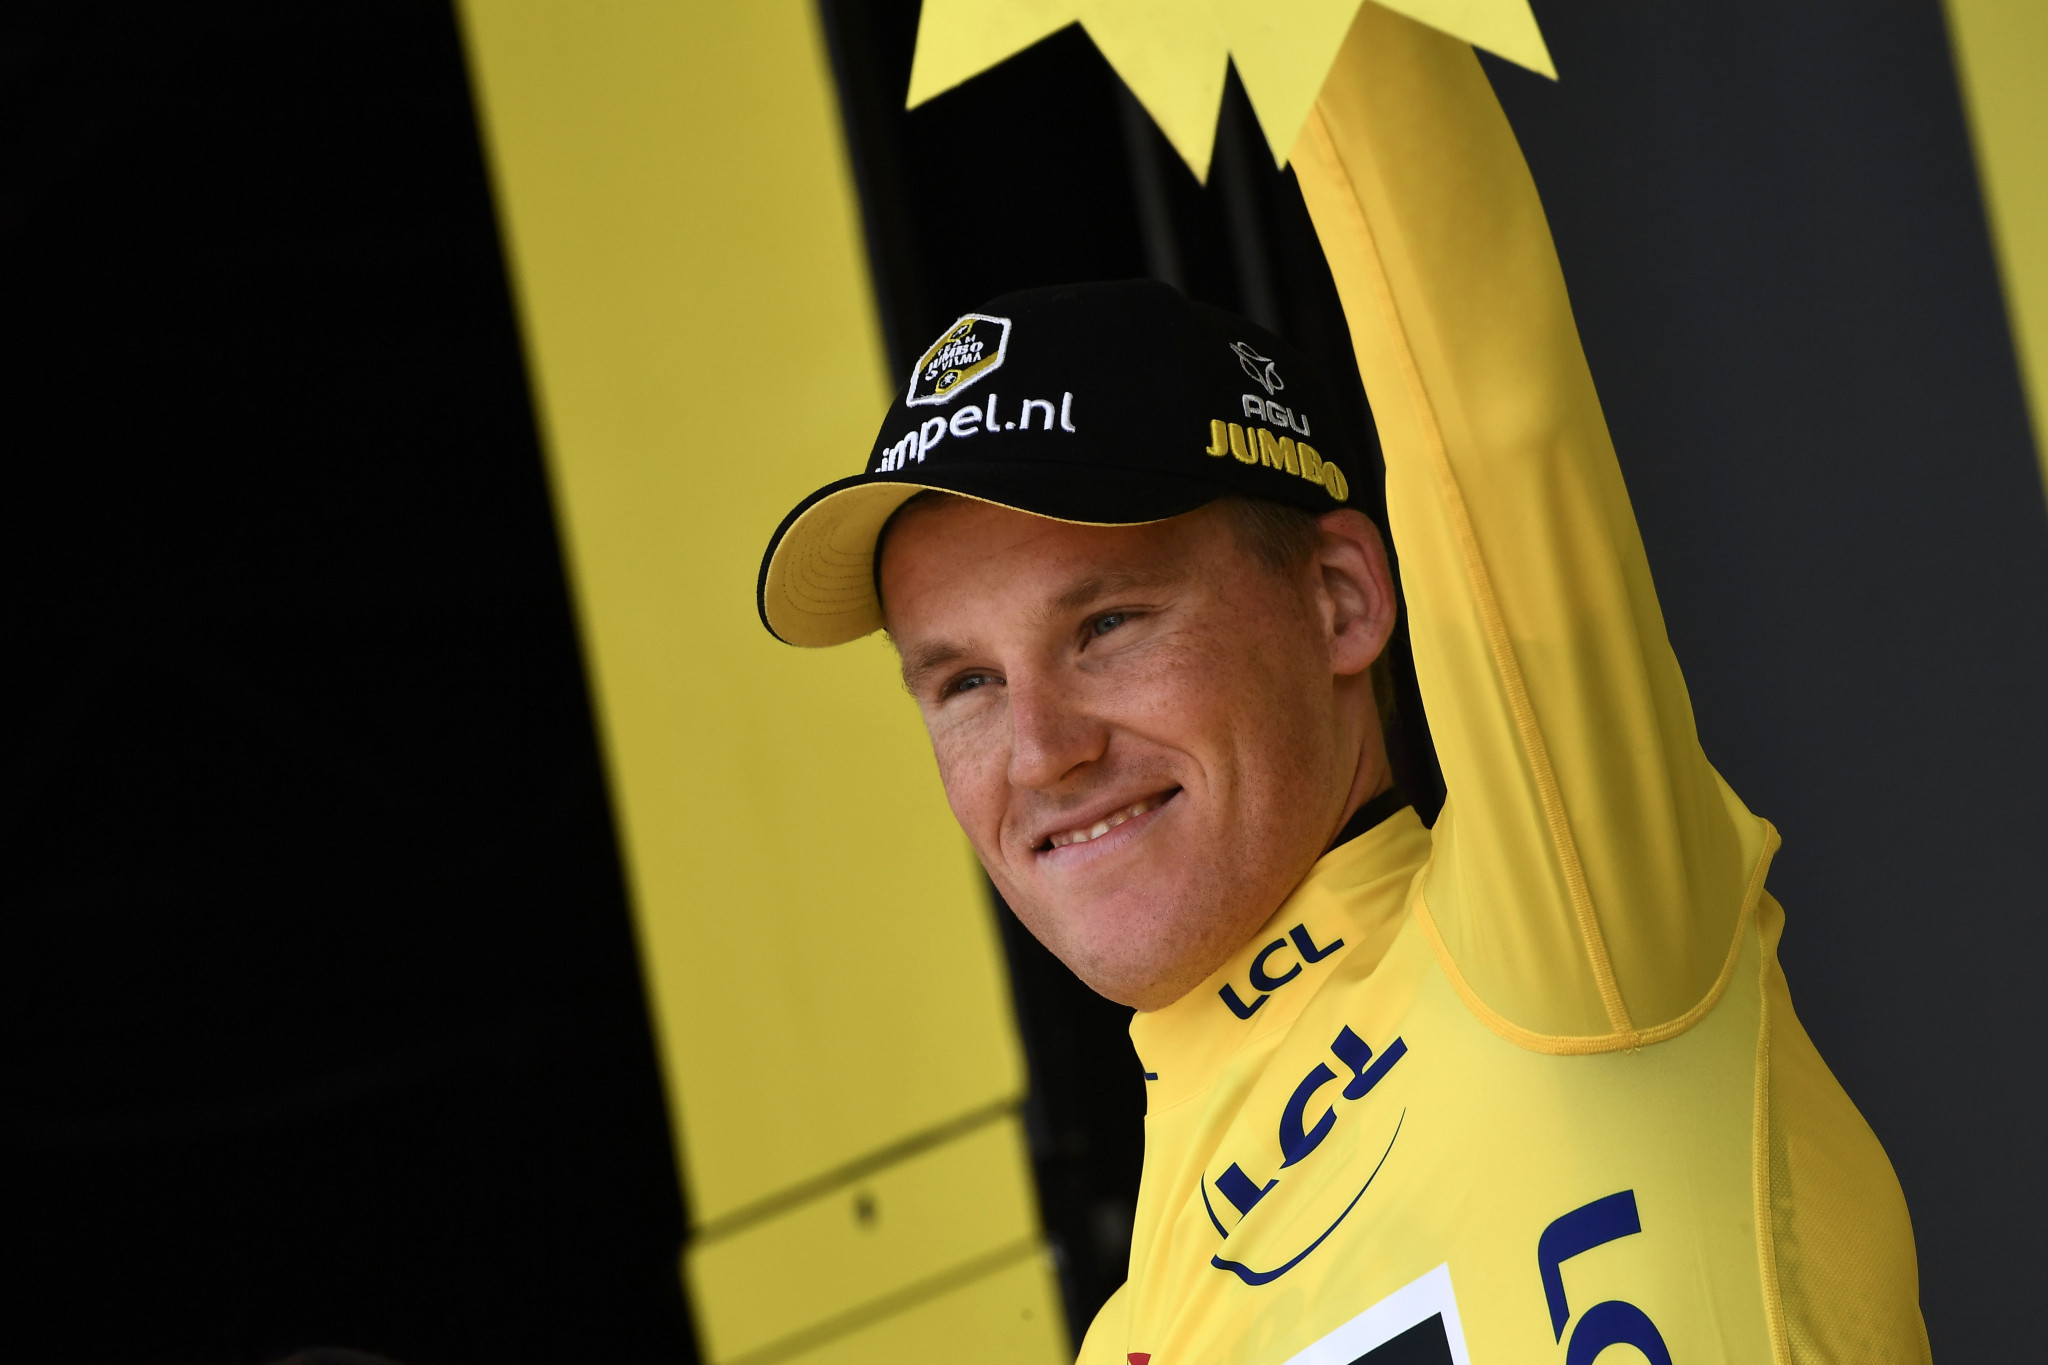 Teunissen extends Tour de France lead after team time trial triumph